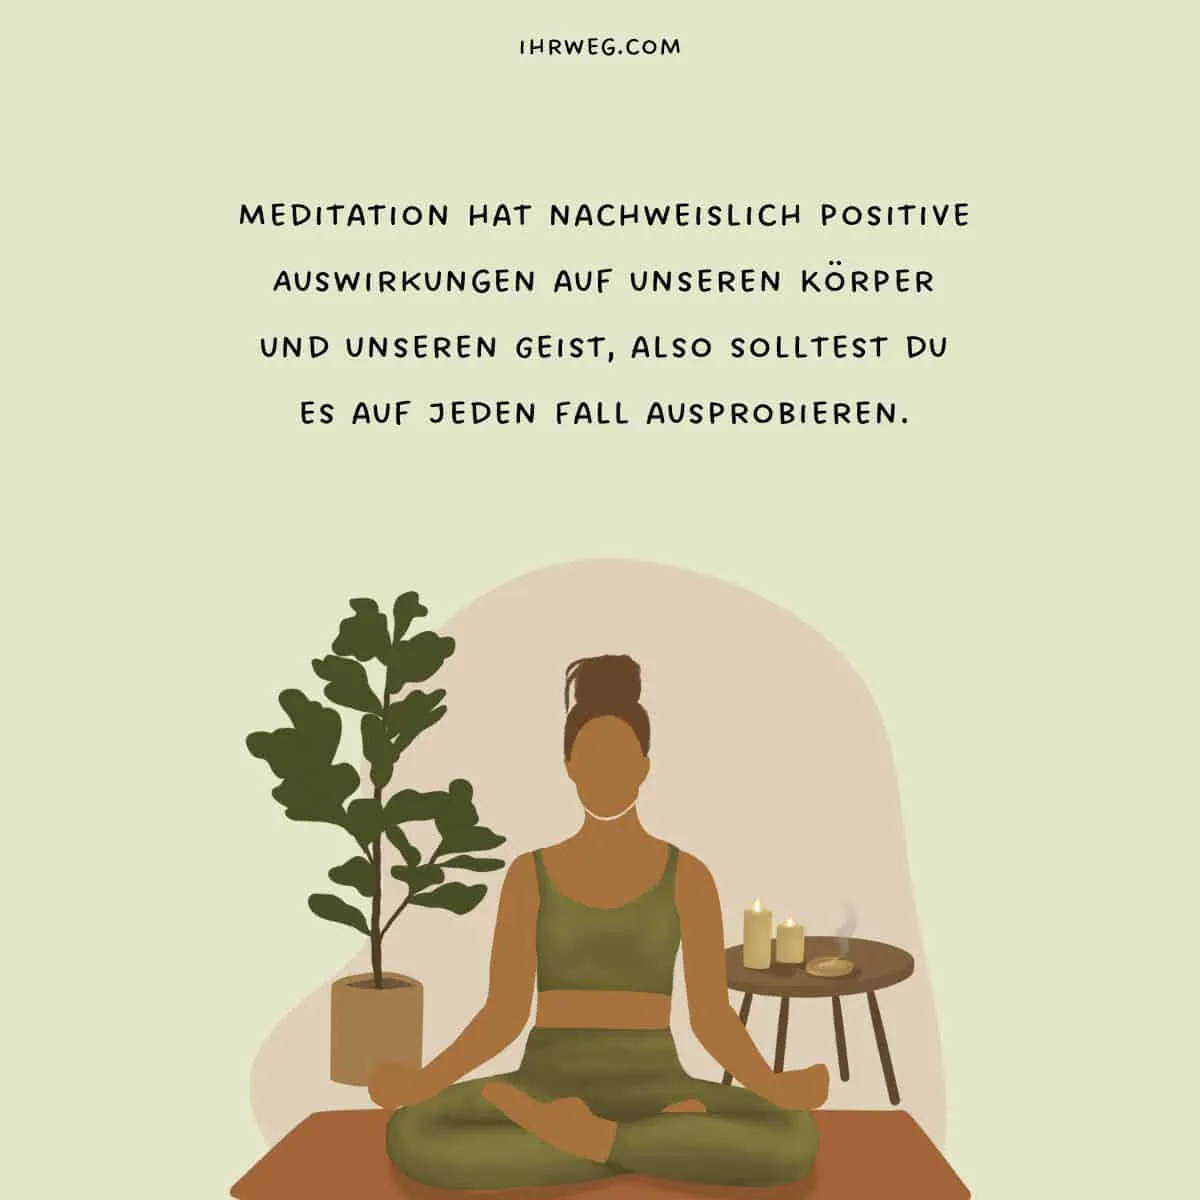 Meditation bringt deinen Körper und deinen Geist in Gleichgewicht